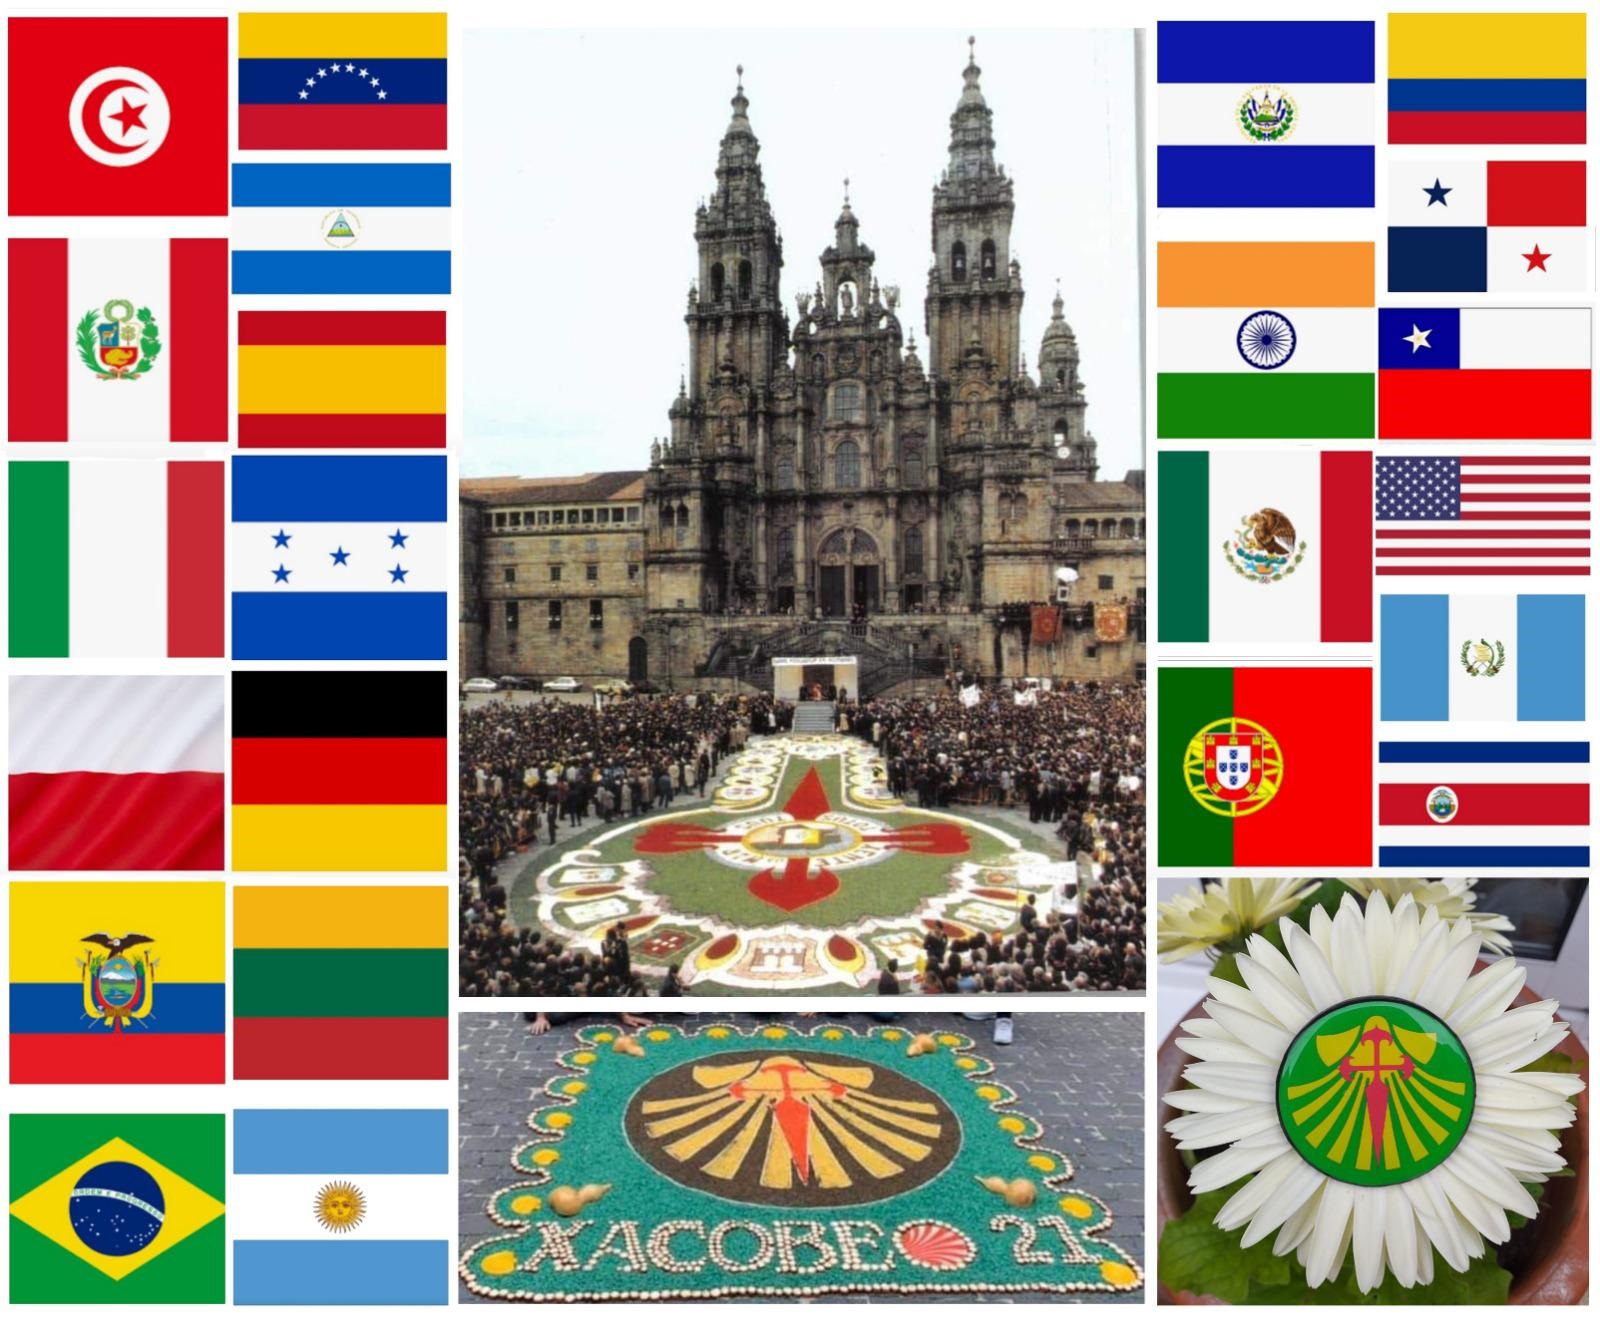 Porzuna participa en el Corpus Christi virtual más internacional junto a más de 100 ciudades de 12 países